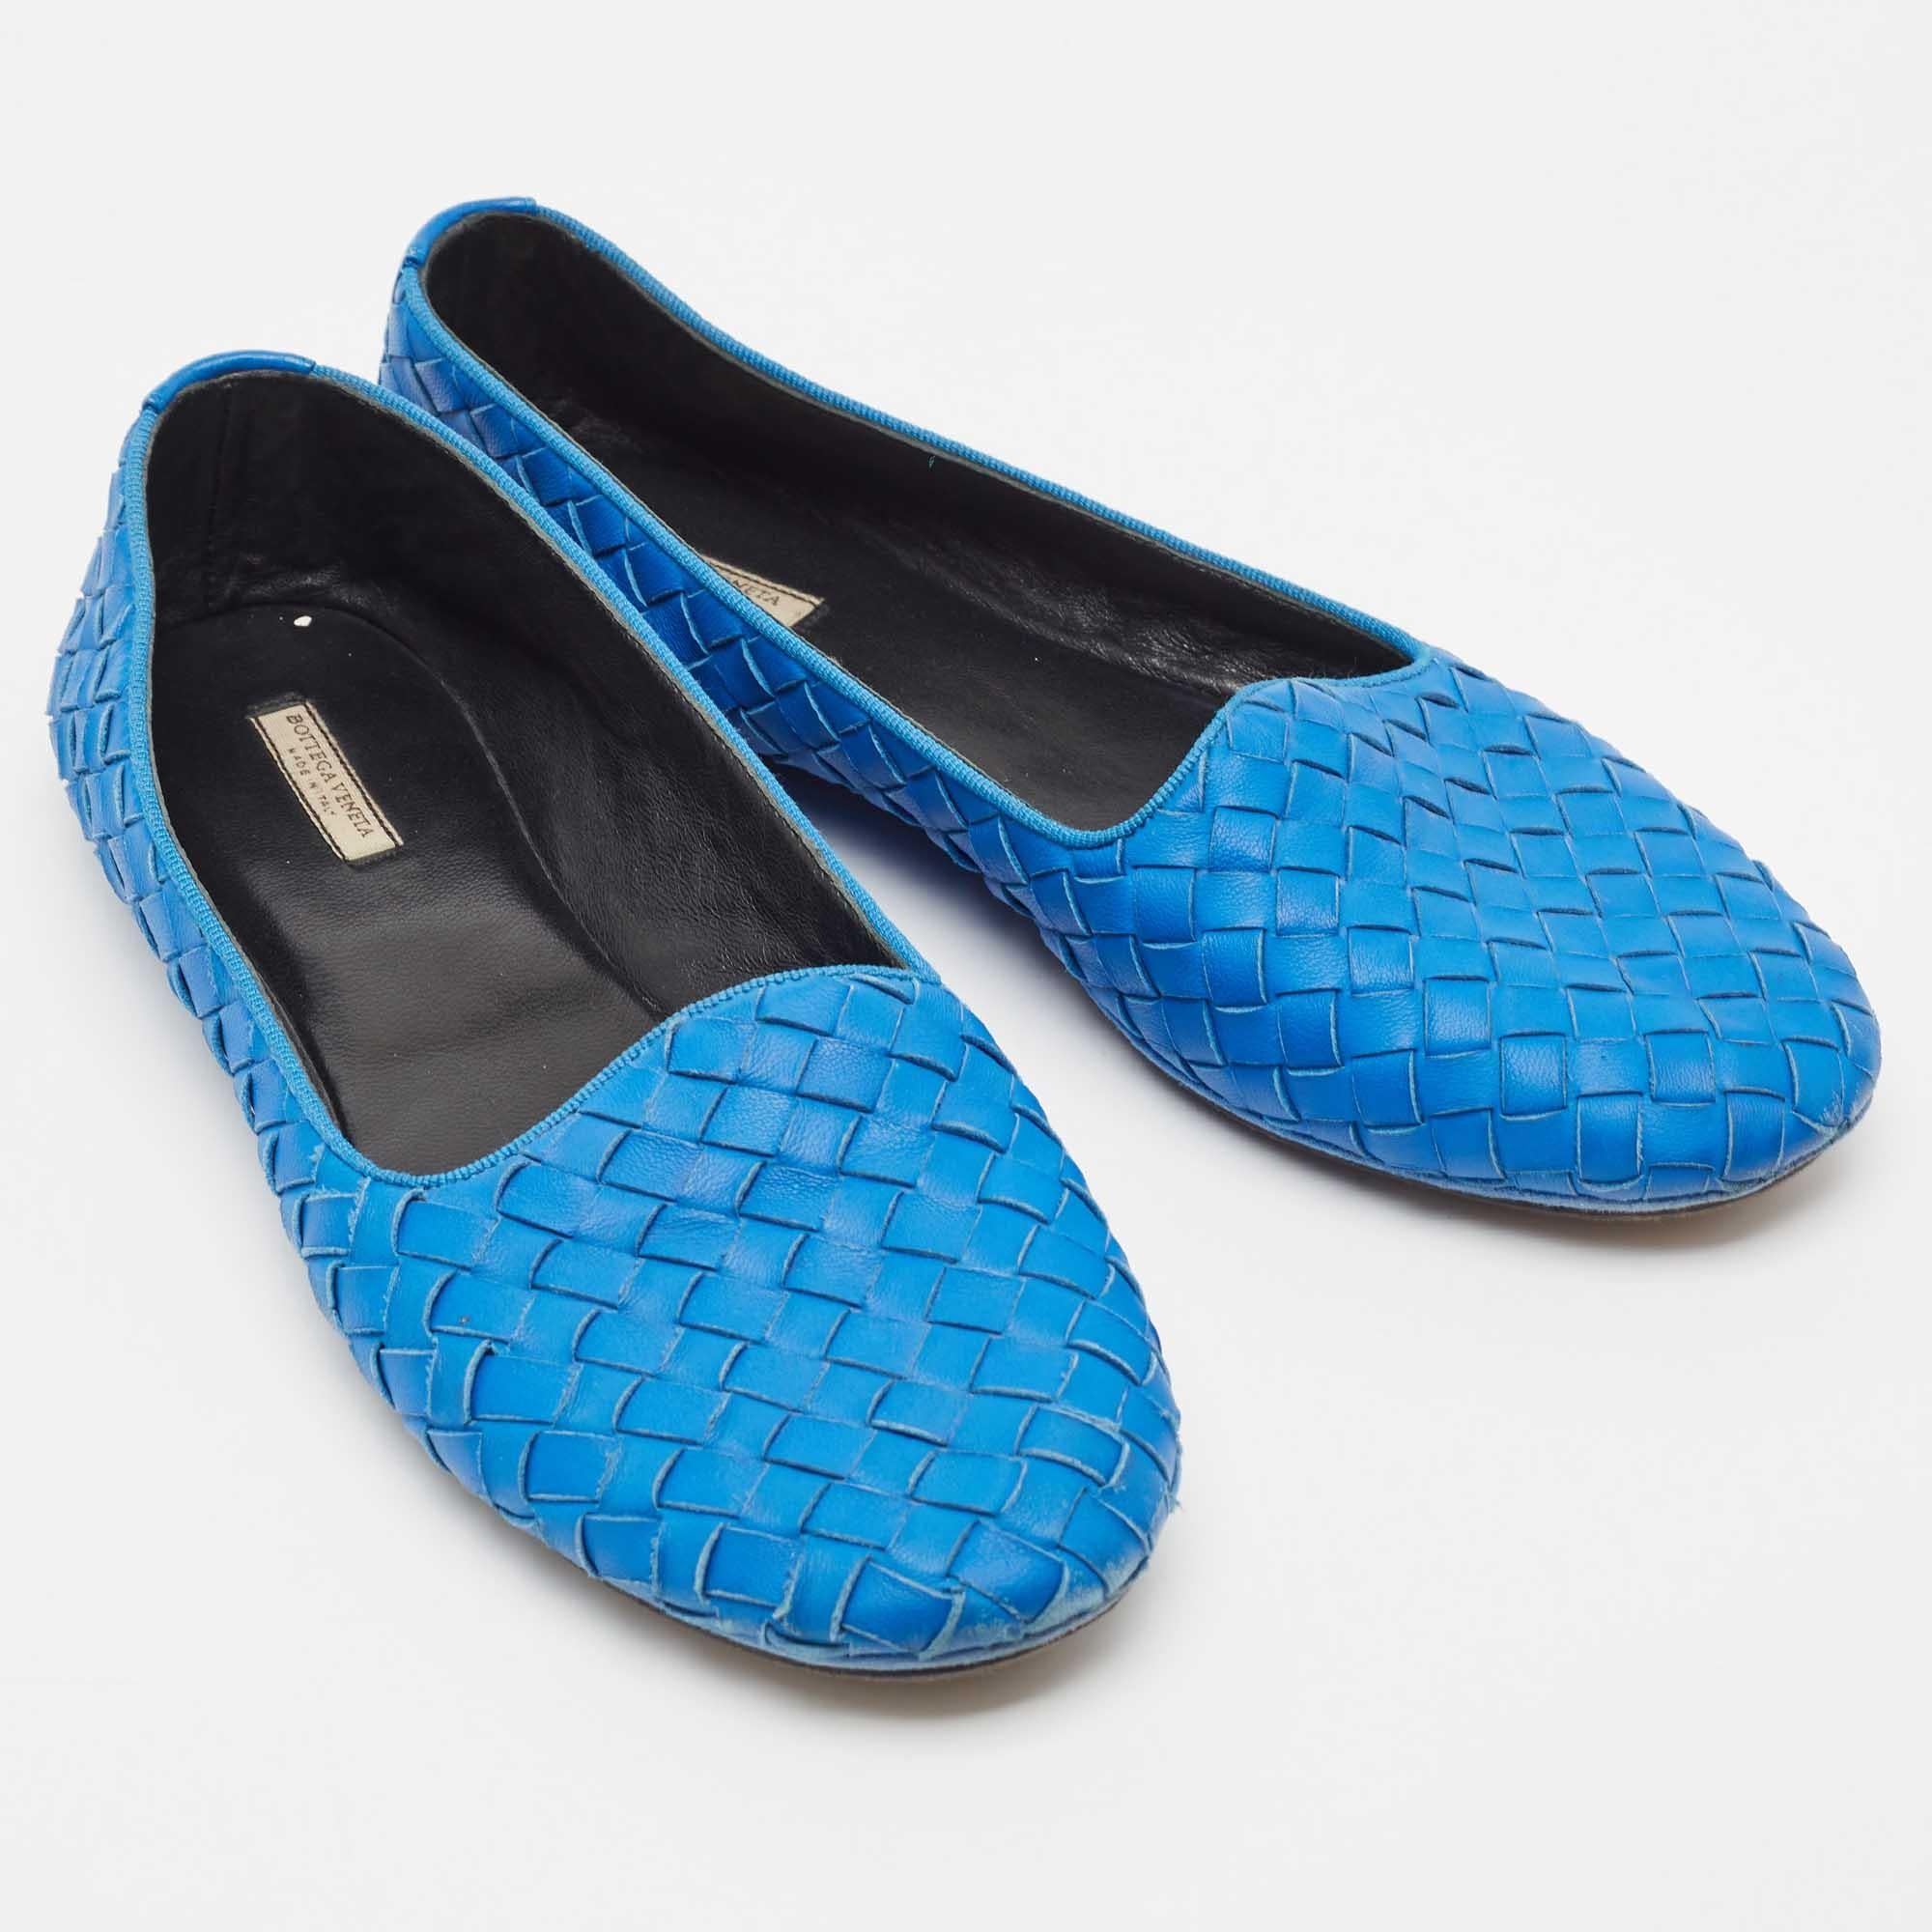 Bottega Veneta Blue Intrecciato Leather Smoking Slippers Size 37 In Good Condition For Sale In Dubai, Al Qouz 2